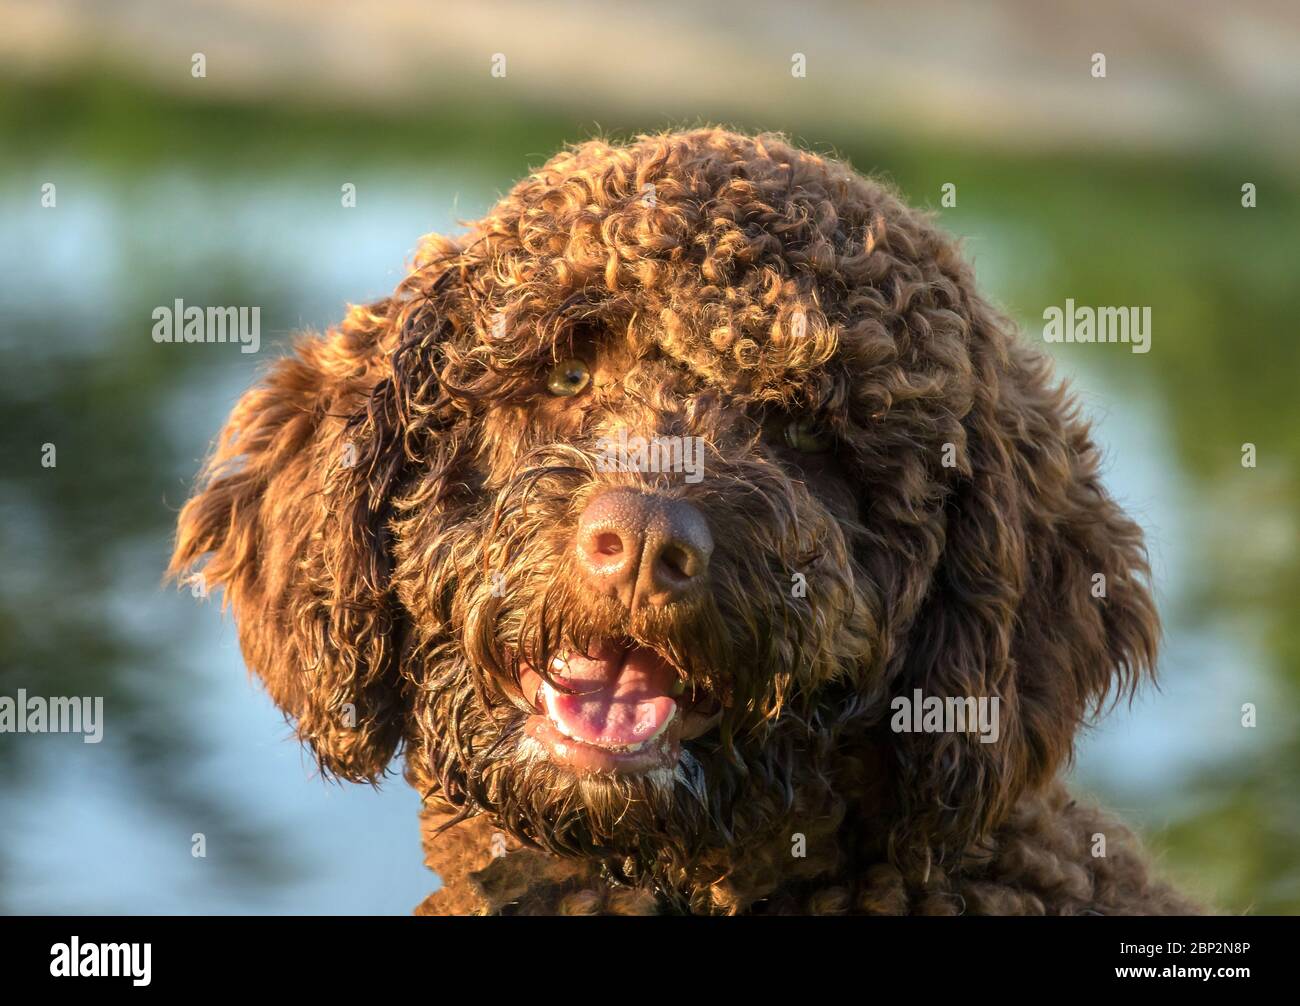 Braun Spanisch Wasser Hund Porträt auf grünem Gras im Freien  Stockfotografie - Alamy